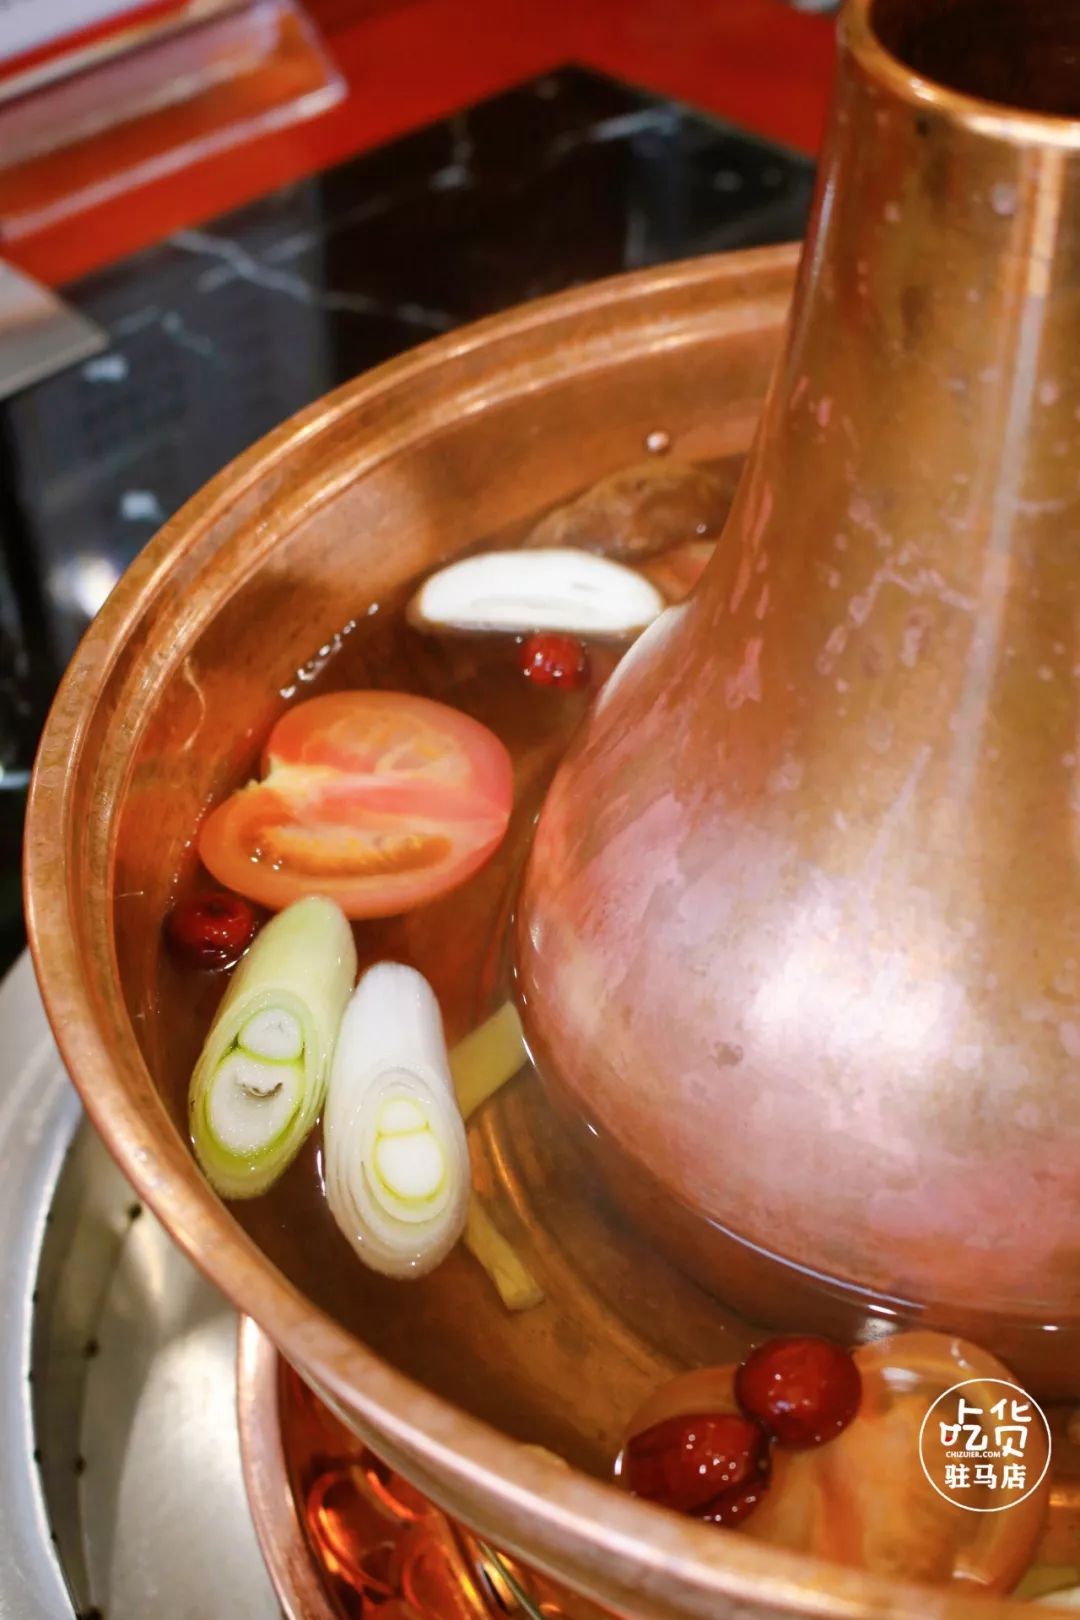 清汤涮肉可没有那么简单 ◆铜锅是老北京涮羊肉的必备,利用铜锅